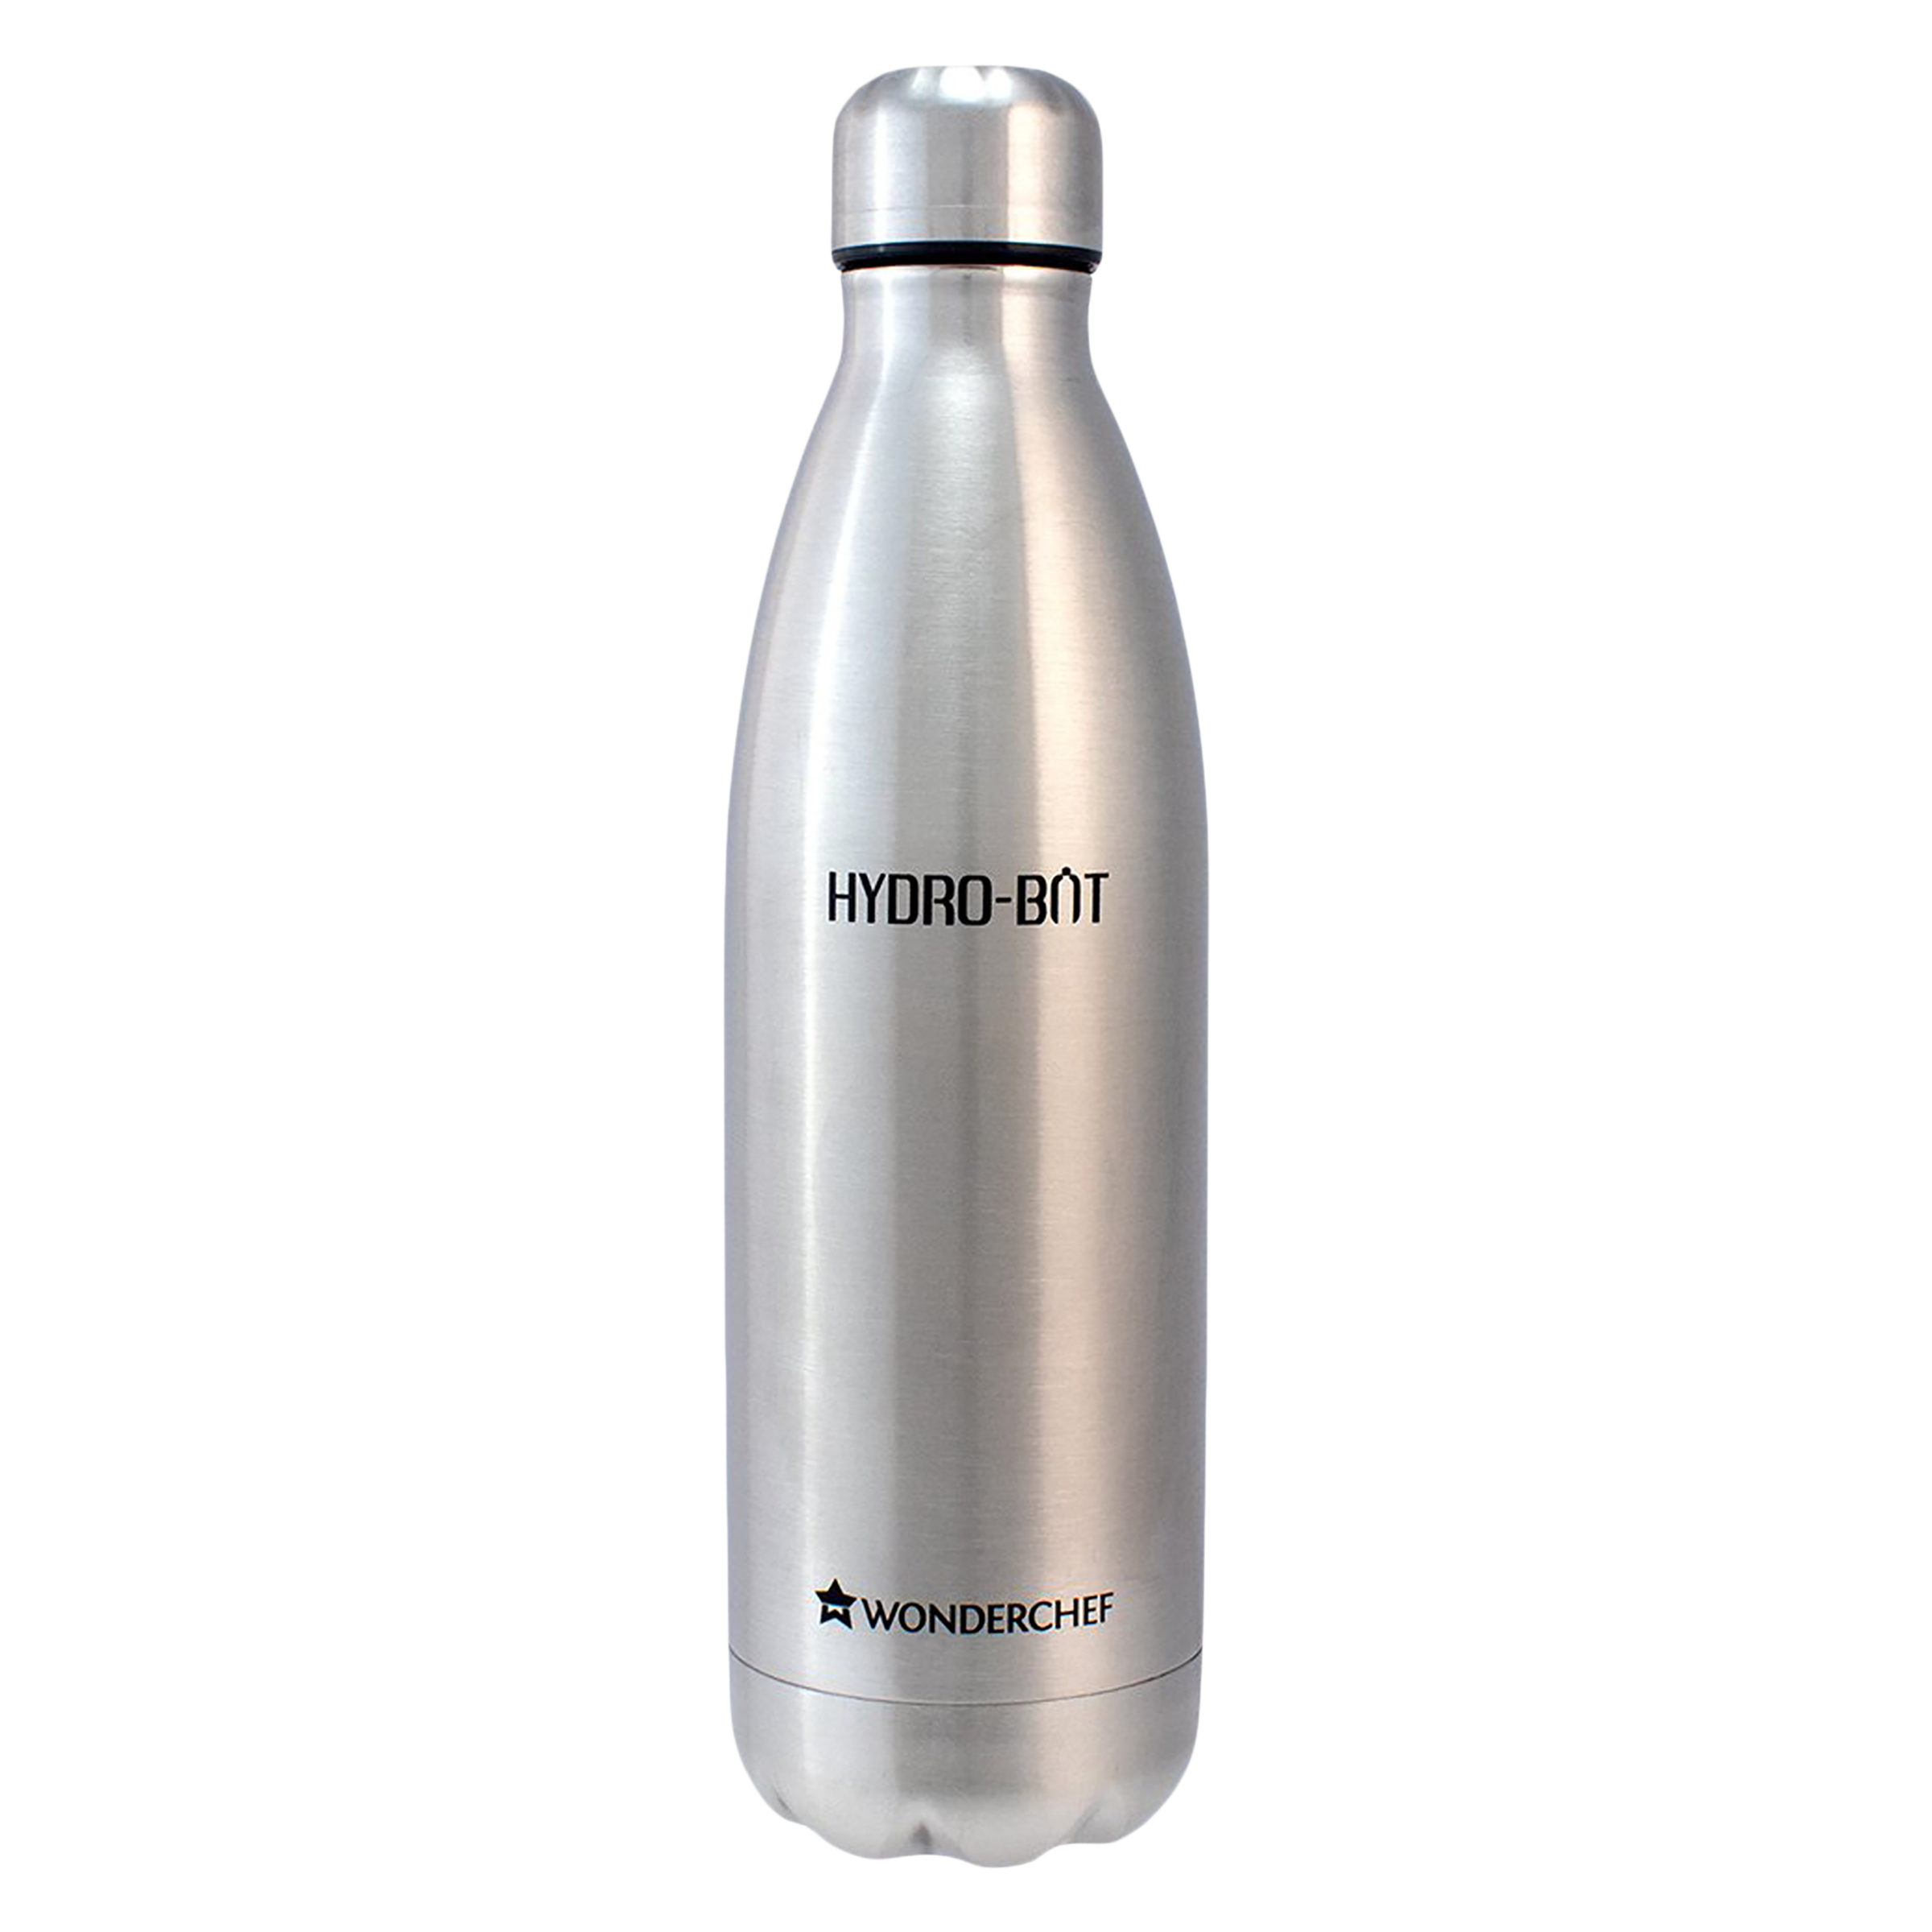 WONDERCHEF Hydro-Bot 500ml Stainless Steel Single Wall Water Bottle (BPA Free, Silver)